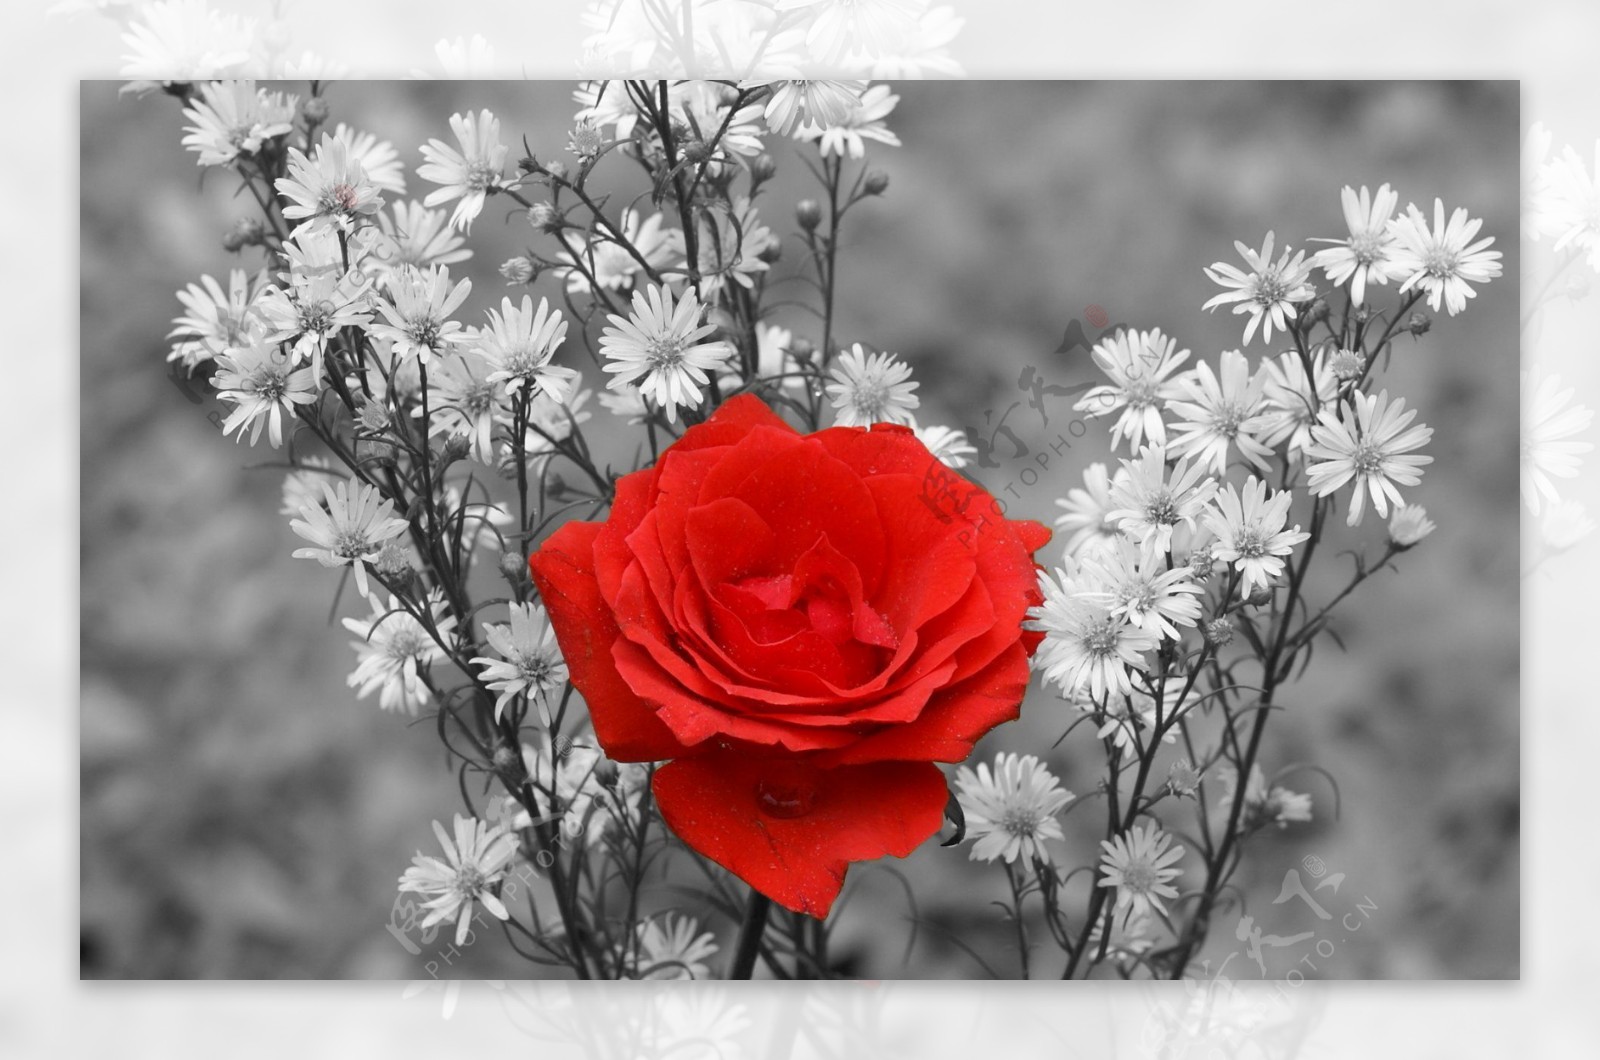 颜色的红玫瑰